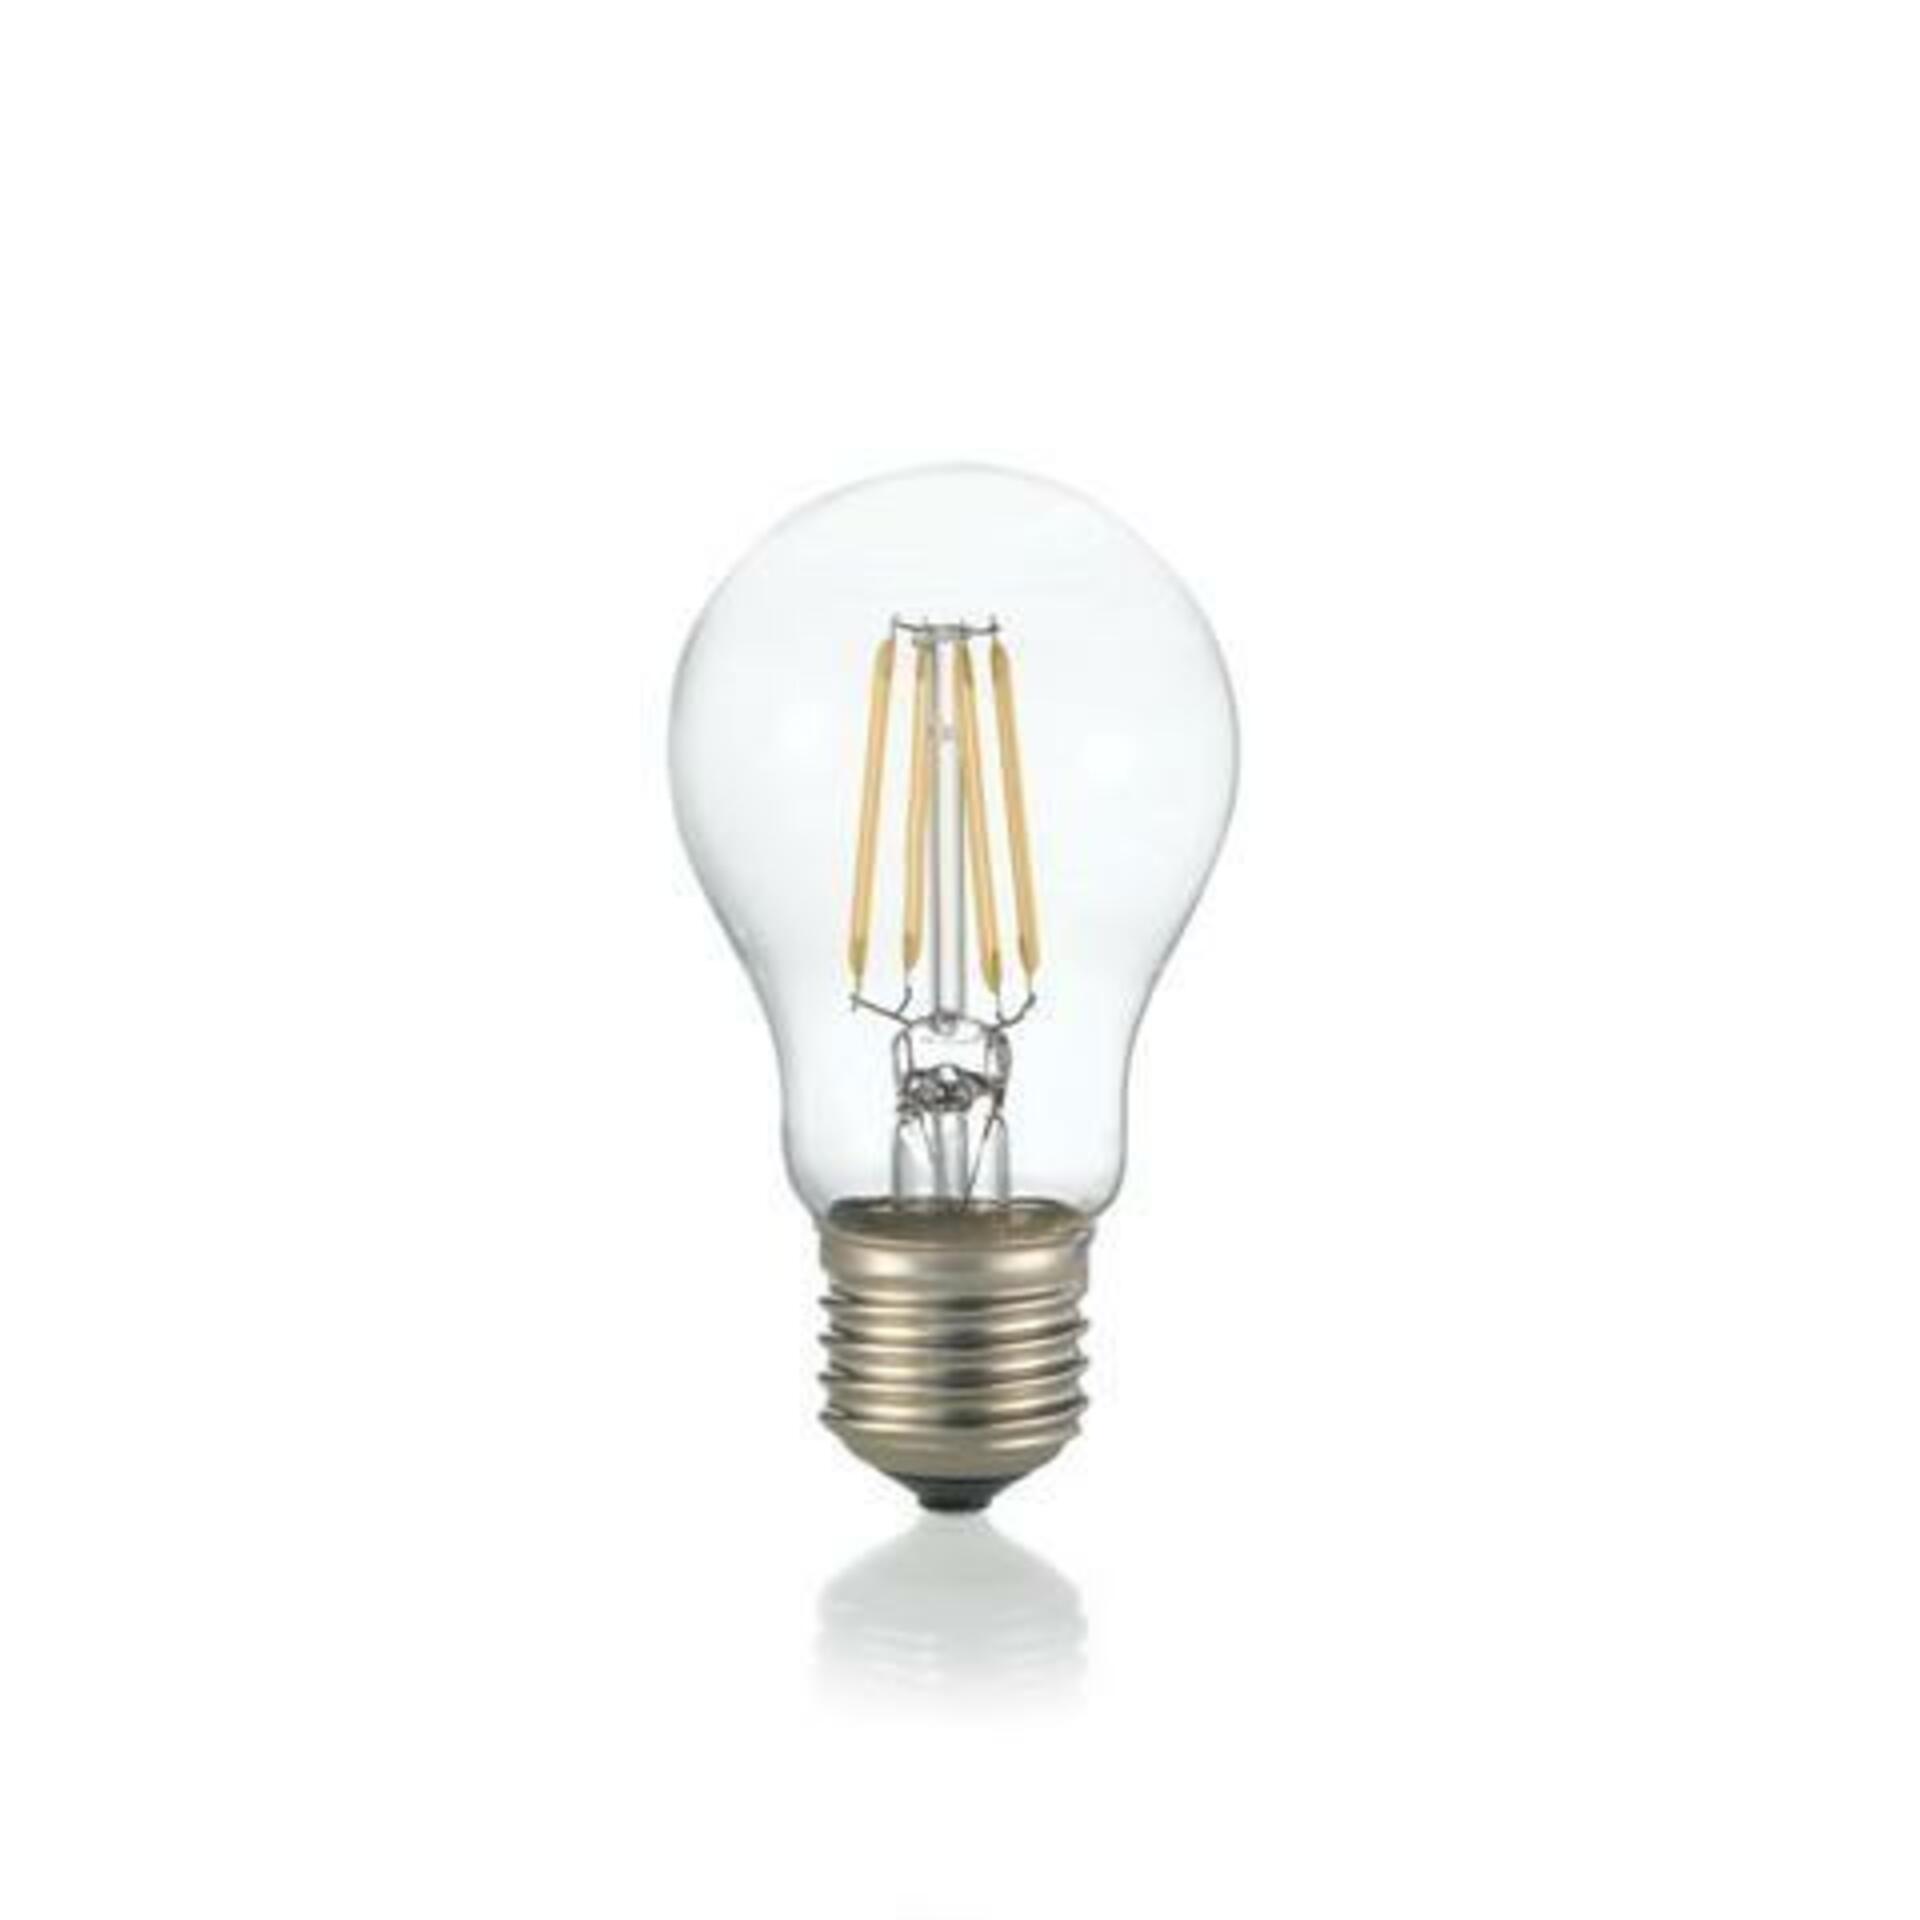 LED Filamentová žárovka Ideal Lux Goccia Trasparente 270951 E27 8W 810lm 2700K čirá nestmívatelná